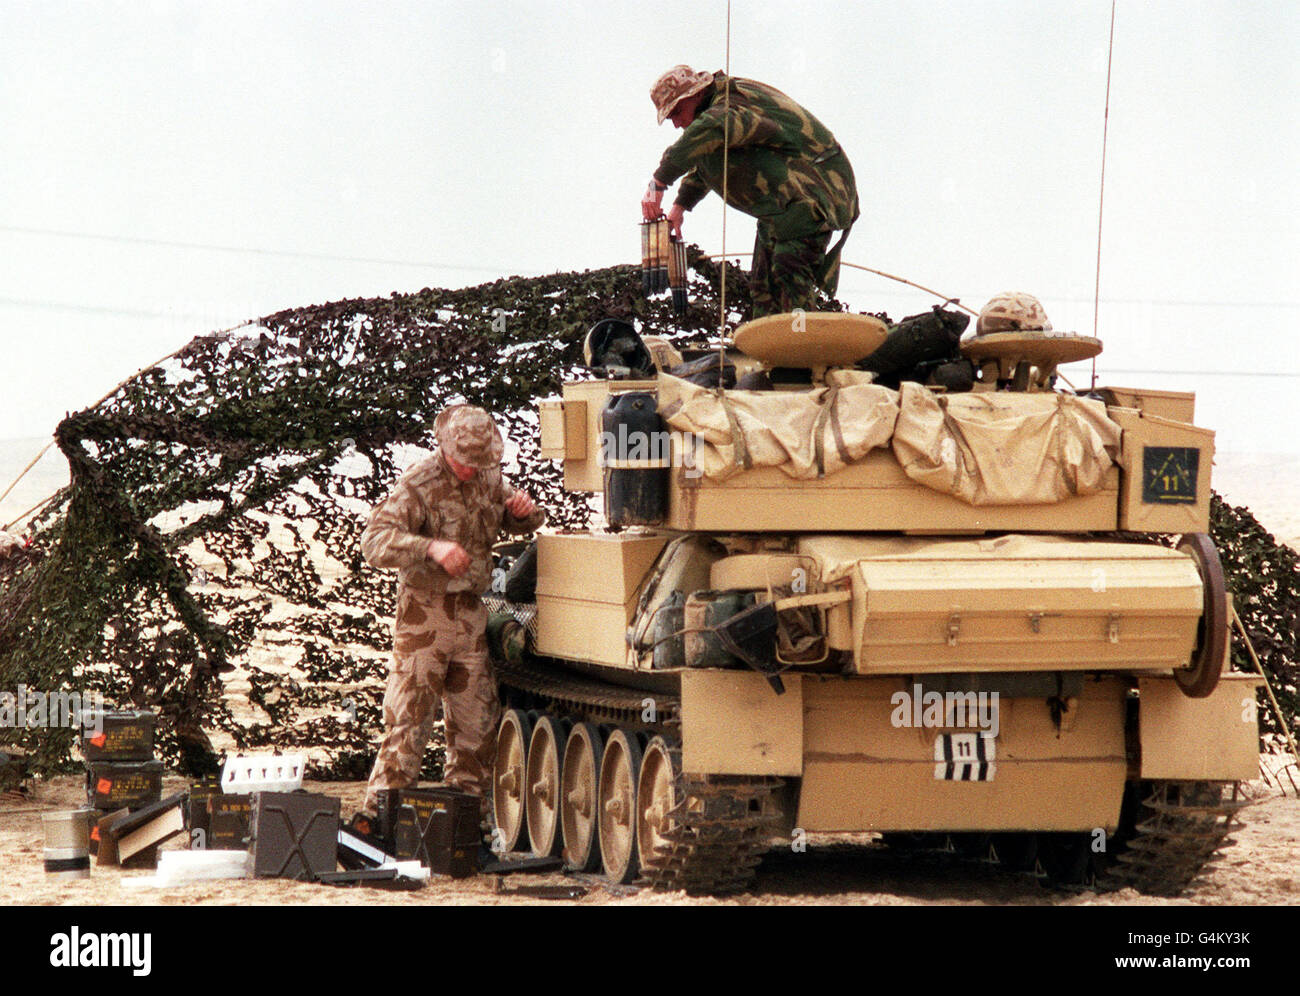 Britische Soldaten während des Golfkrieges: Ein gepanzertes Fahrzeug der Royal Lancers der 16./5. Königin (Teil der 7. Panzerbrigade) wird während des Golfkrieges in der Saudi-arabischen Wüste mit frischen Geschäften und Waffen beladen. Stockfoto